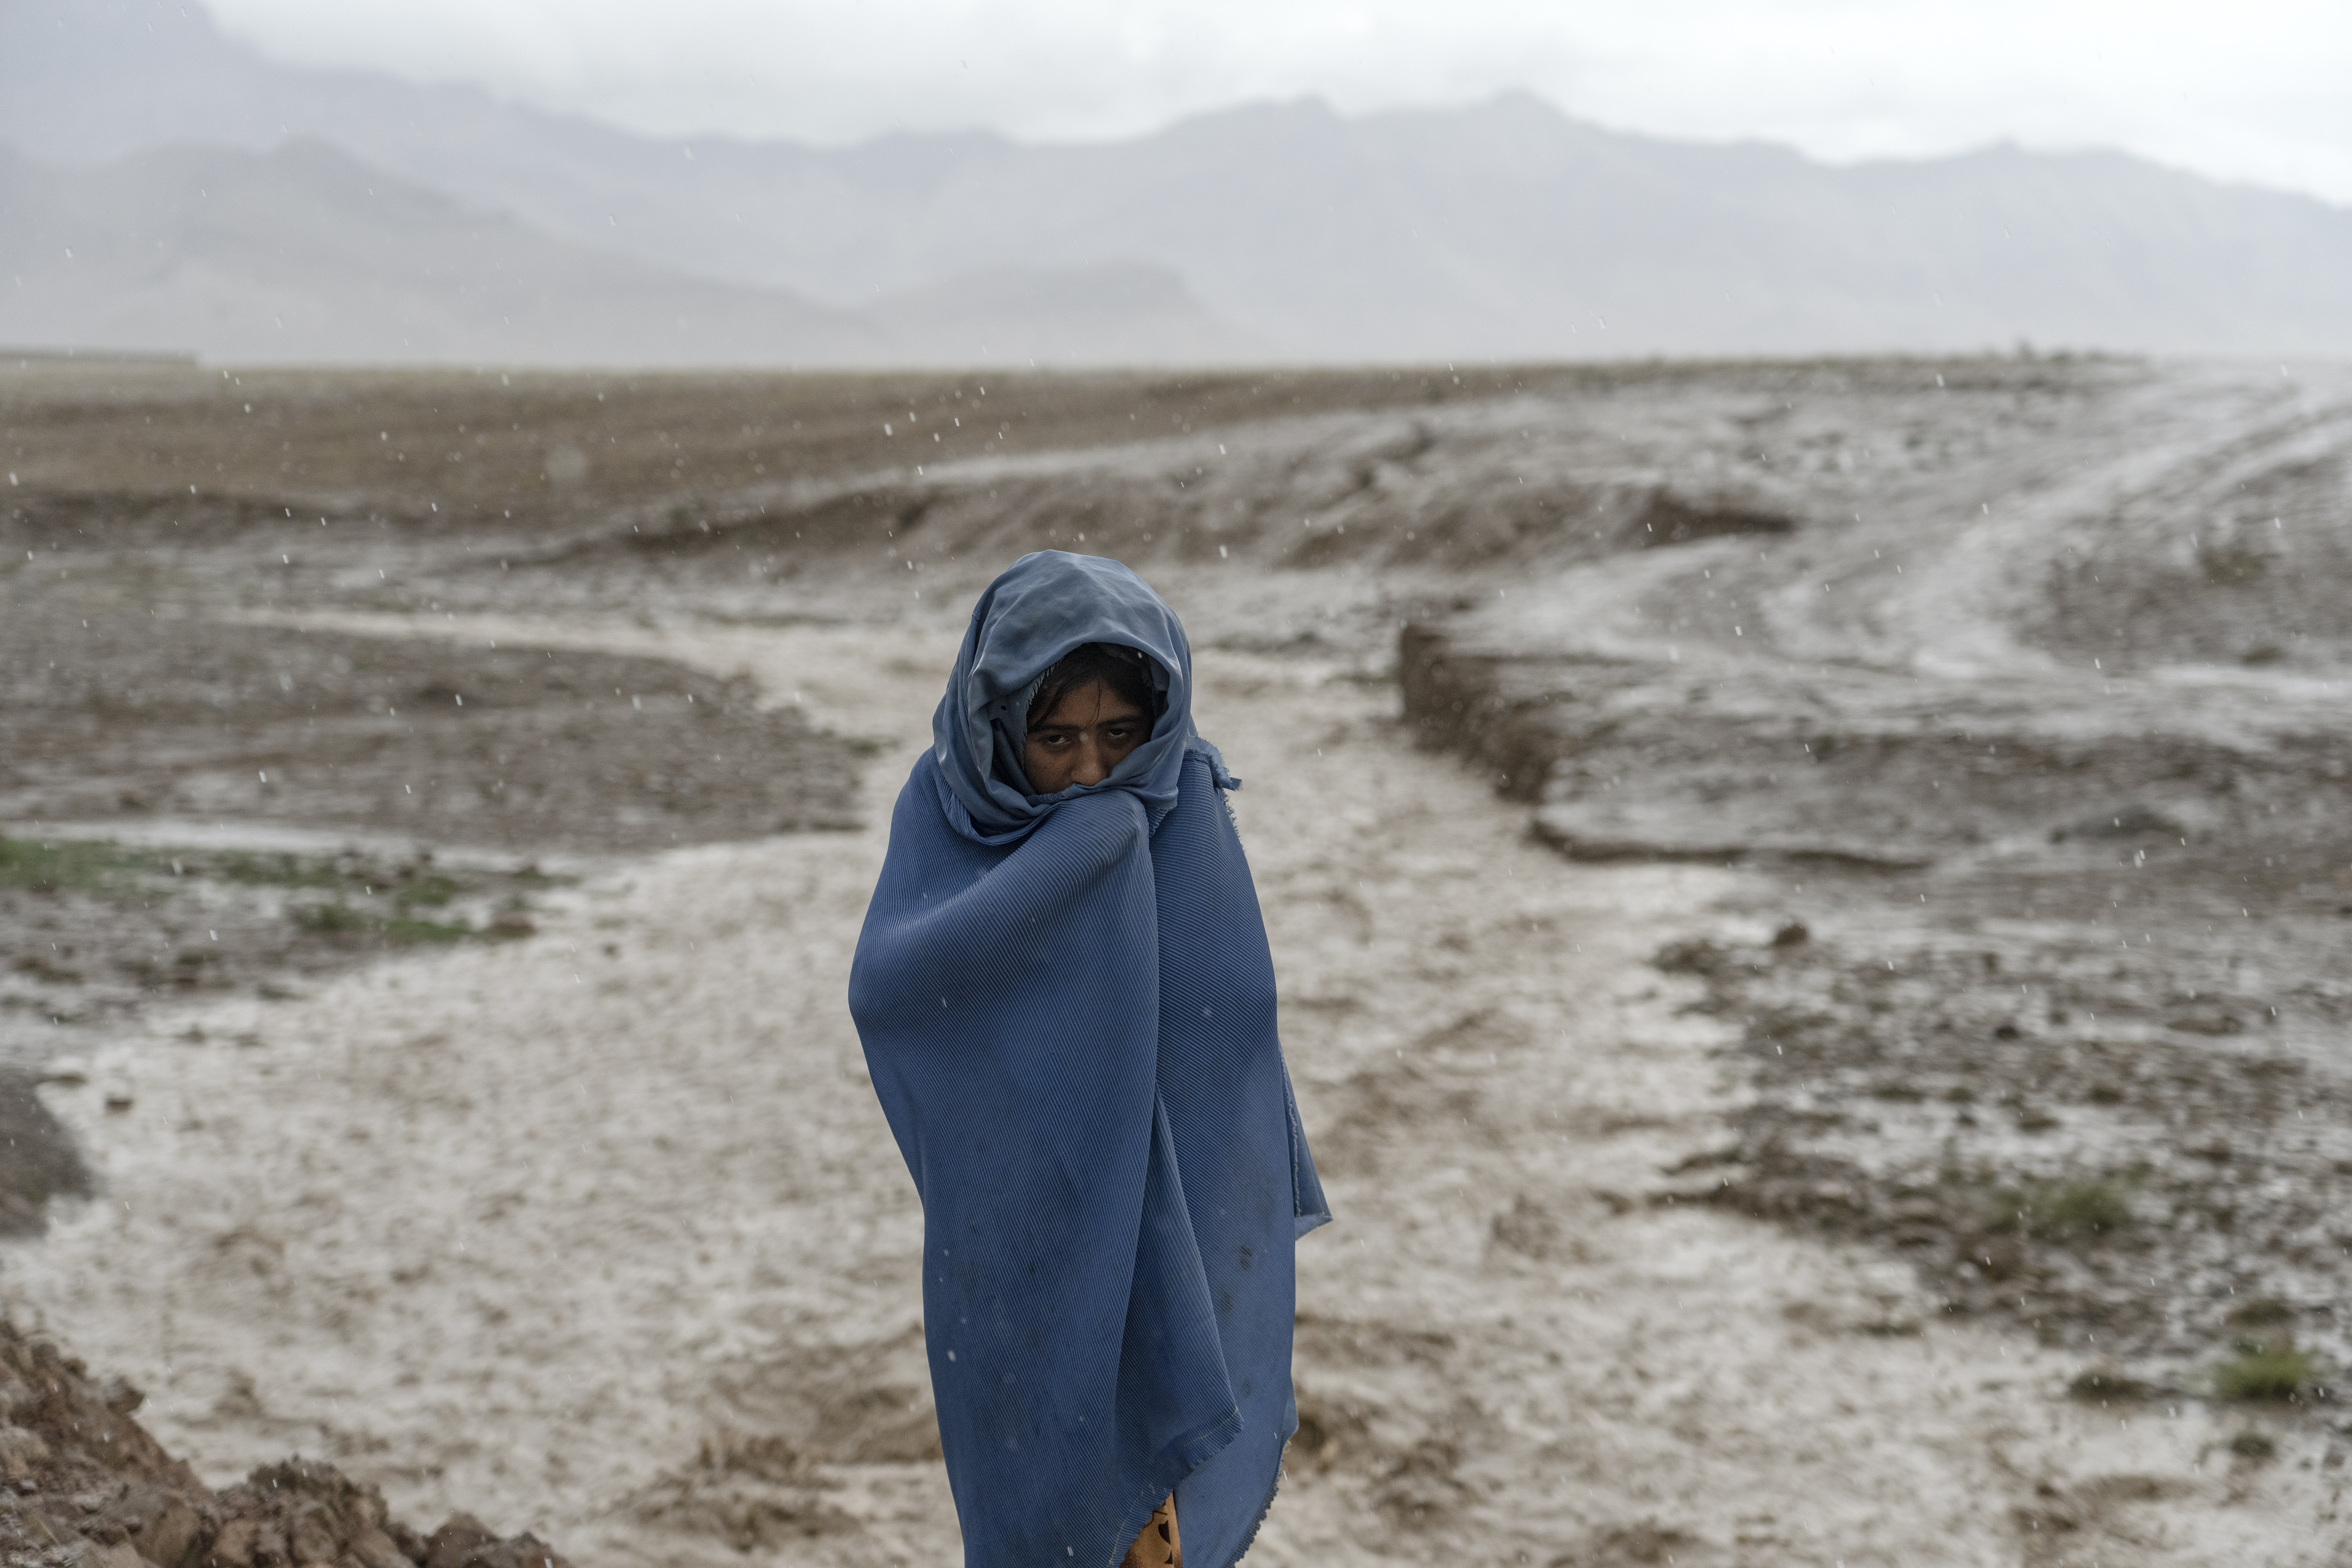 Una niña afgana de 9 años trabaja bajo la lluvia cerca de una fábrica de ladrillos.
